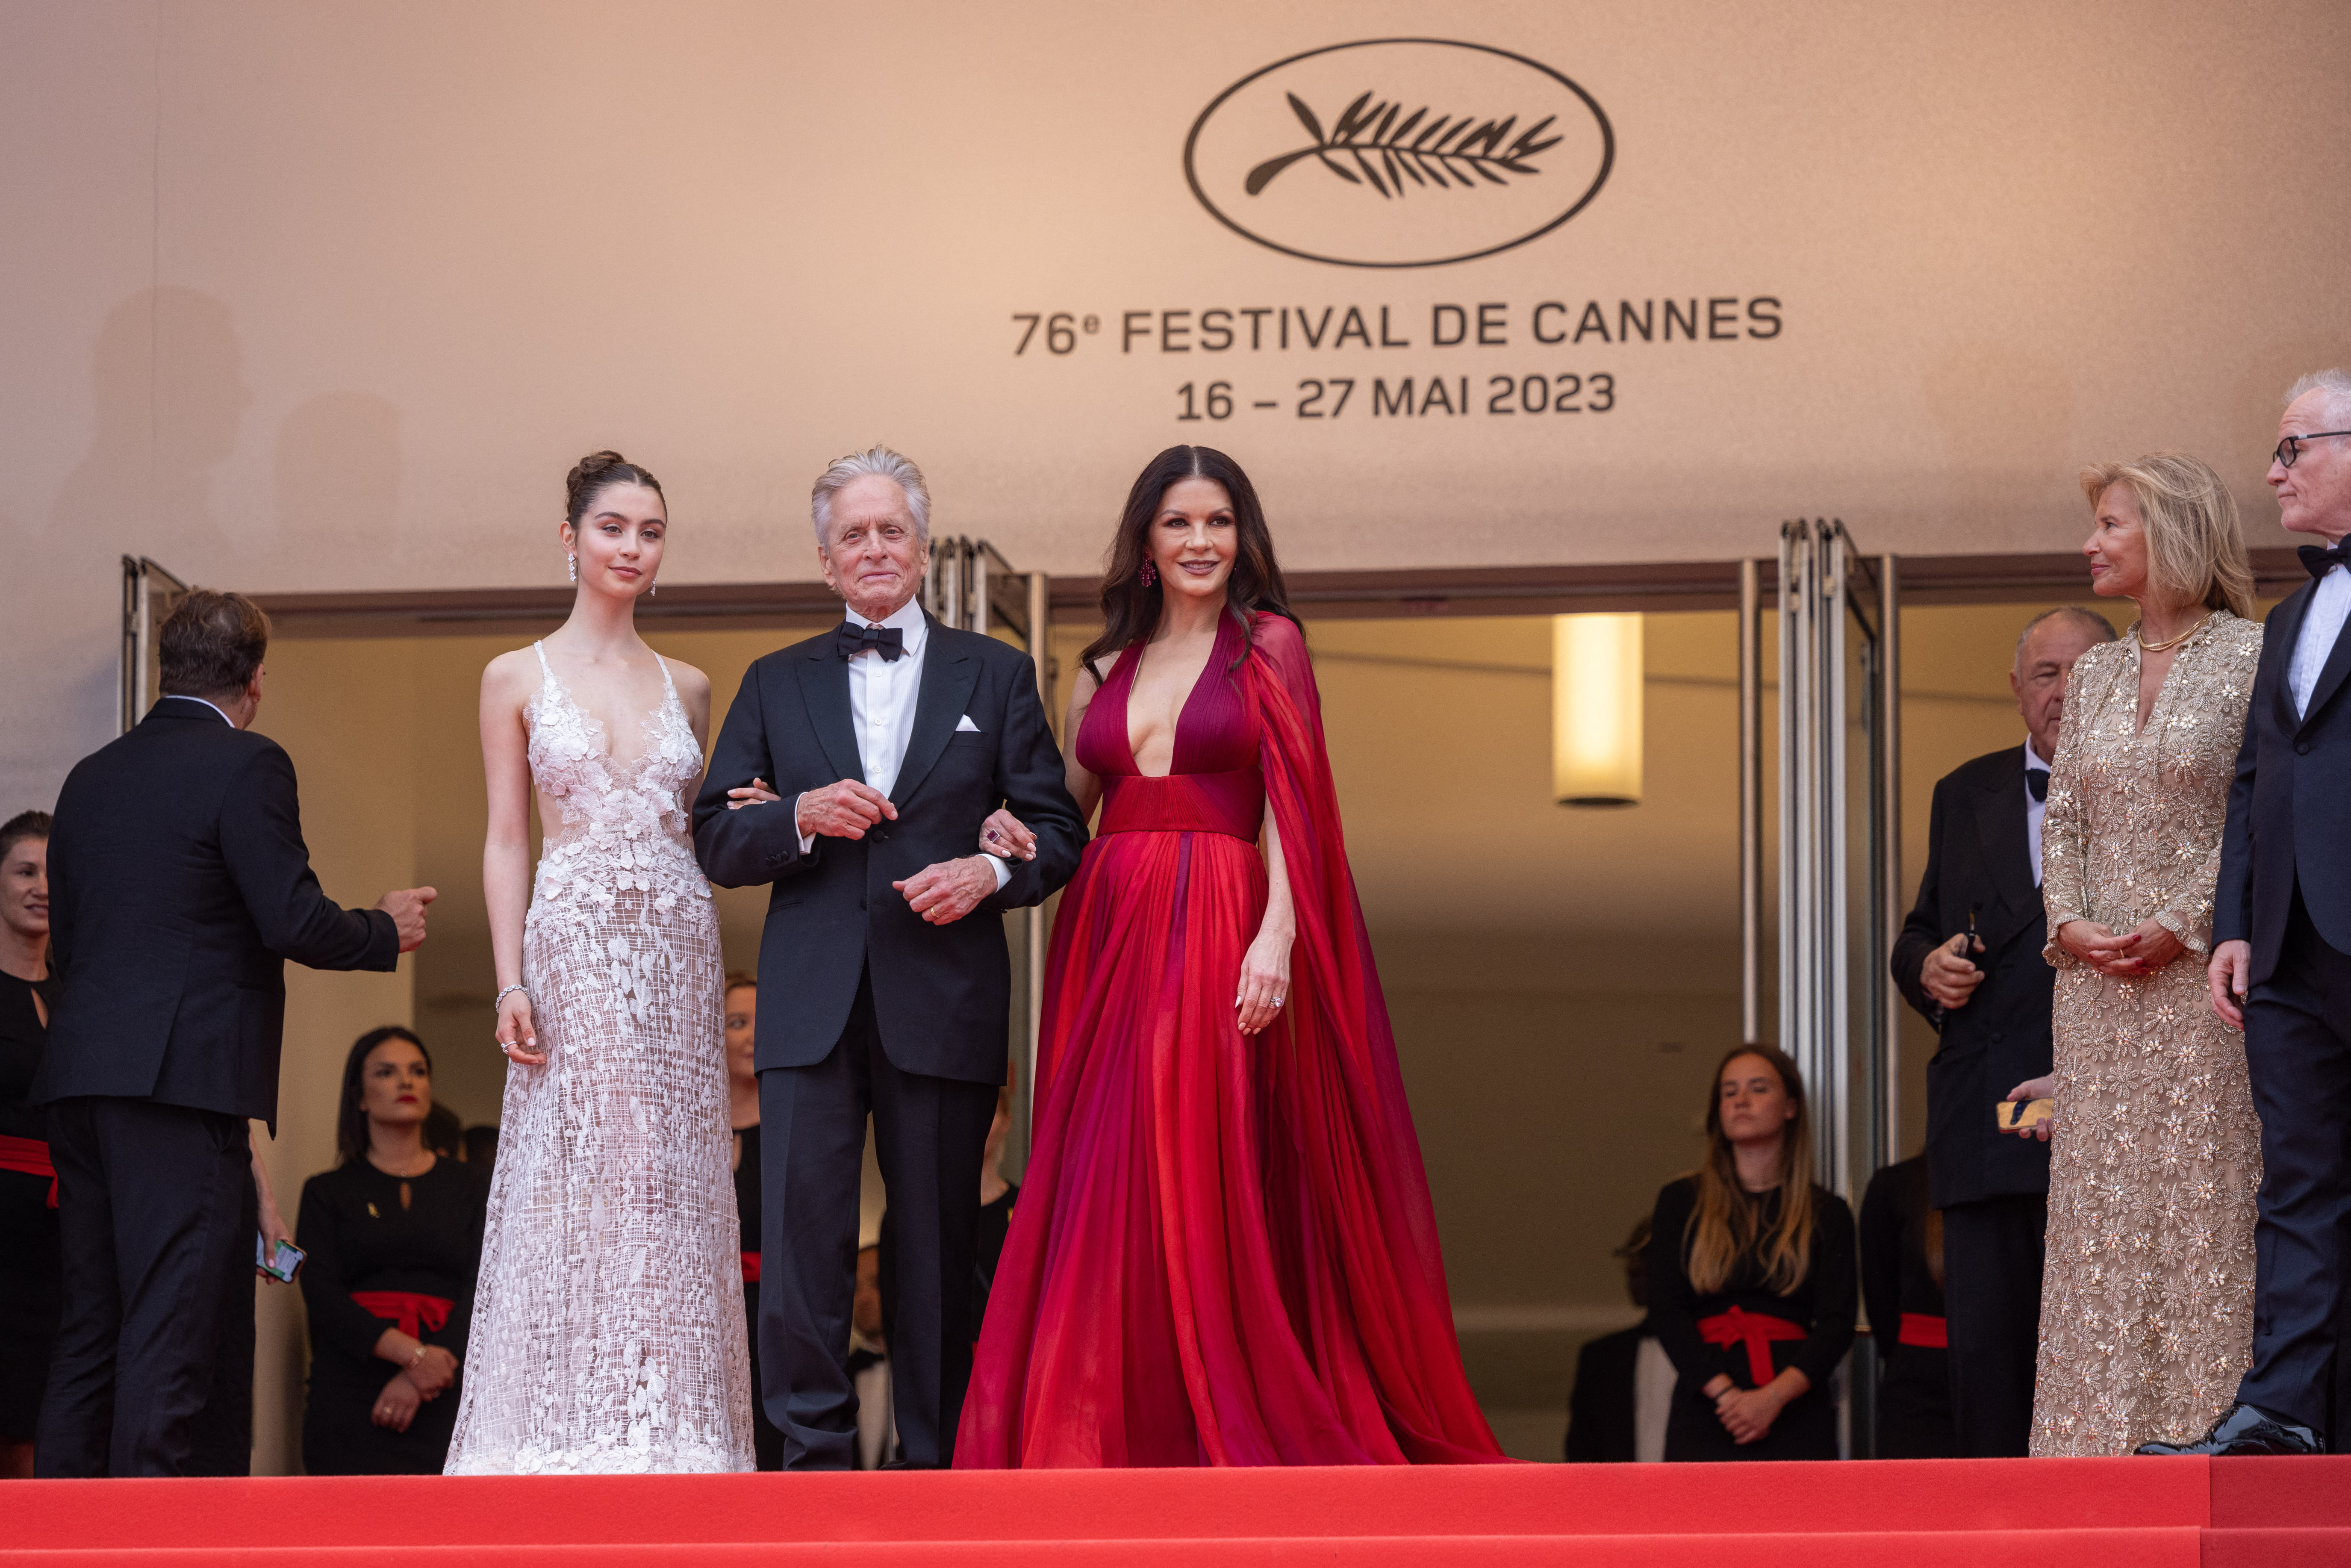 Itt vannak a legjobb fotók a Cannes-i fesztivál nyitónapjáról - Blikk